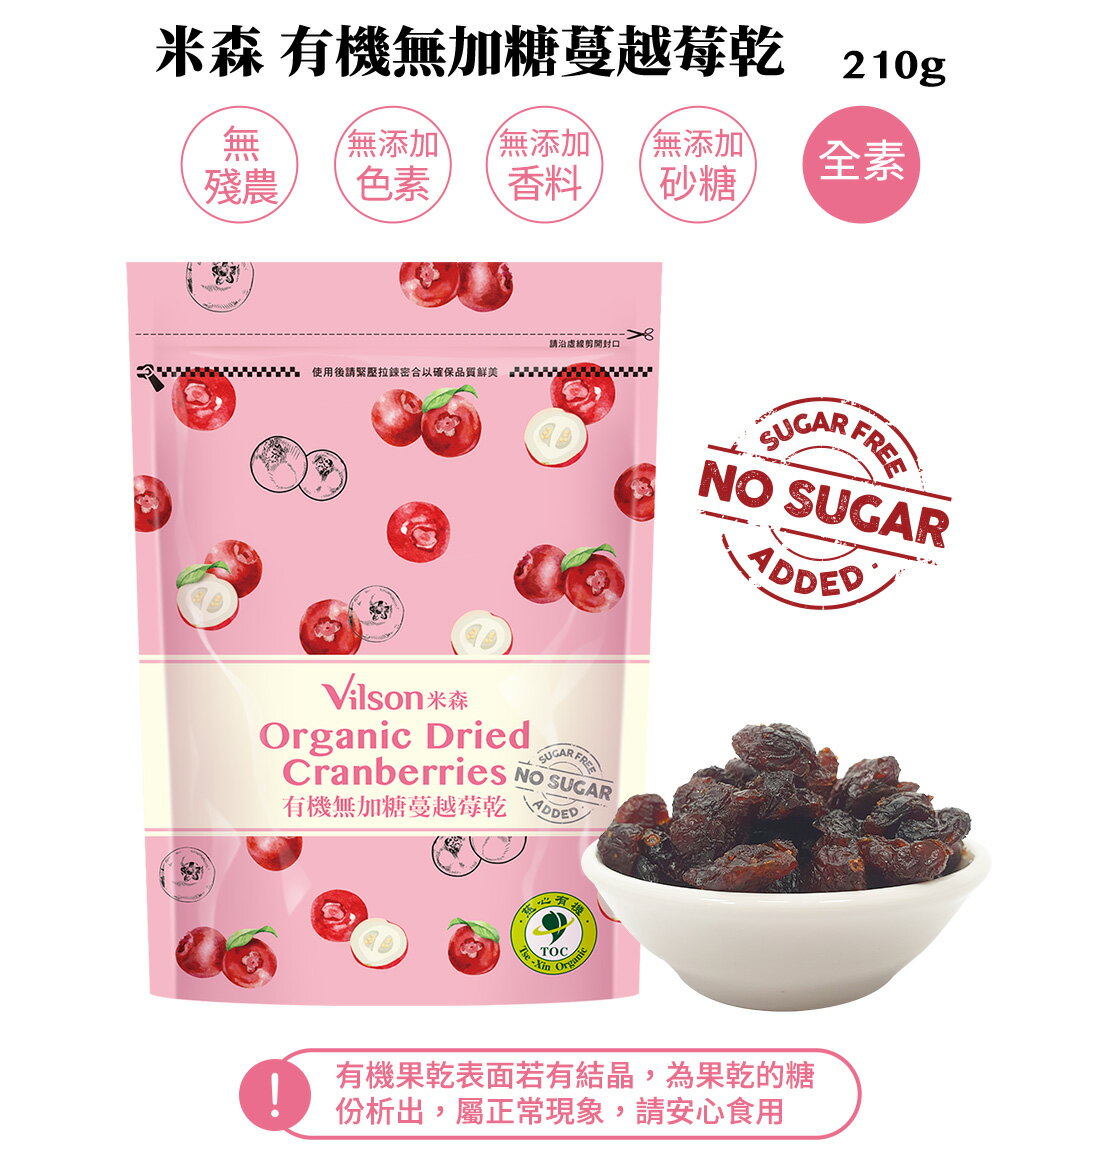 【米森 vilson】8.5折↘ 有機無加糖蔓越莓乾(210g)效期2025.03.04